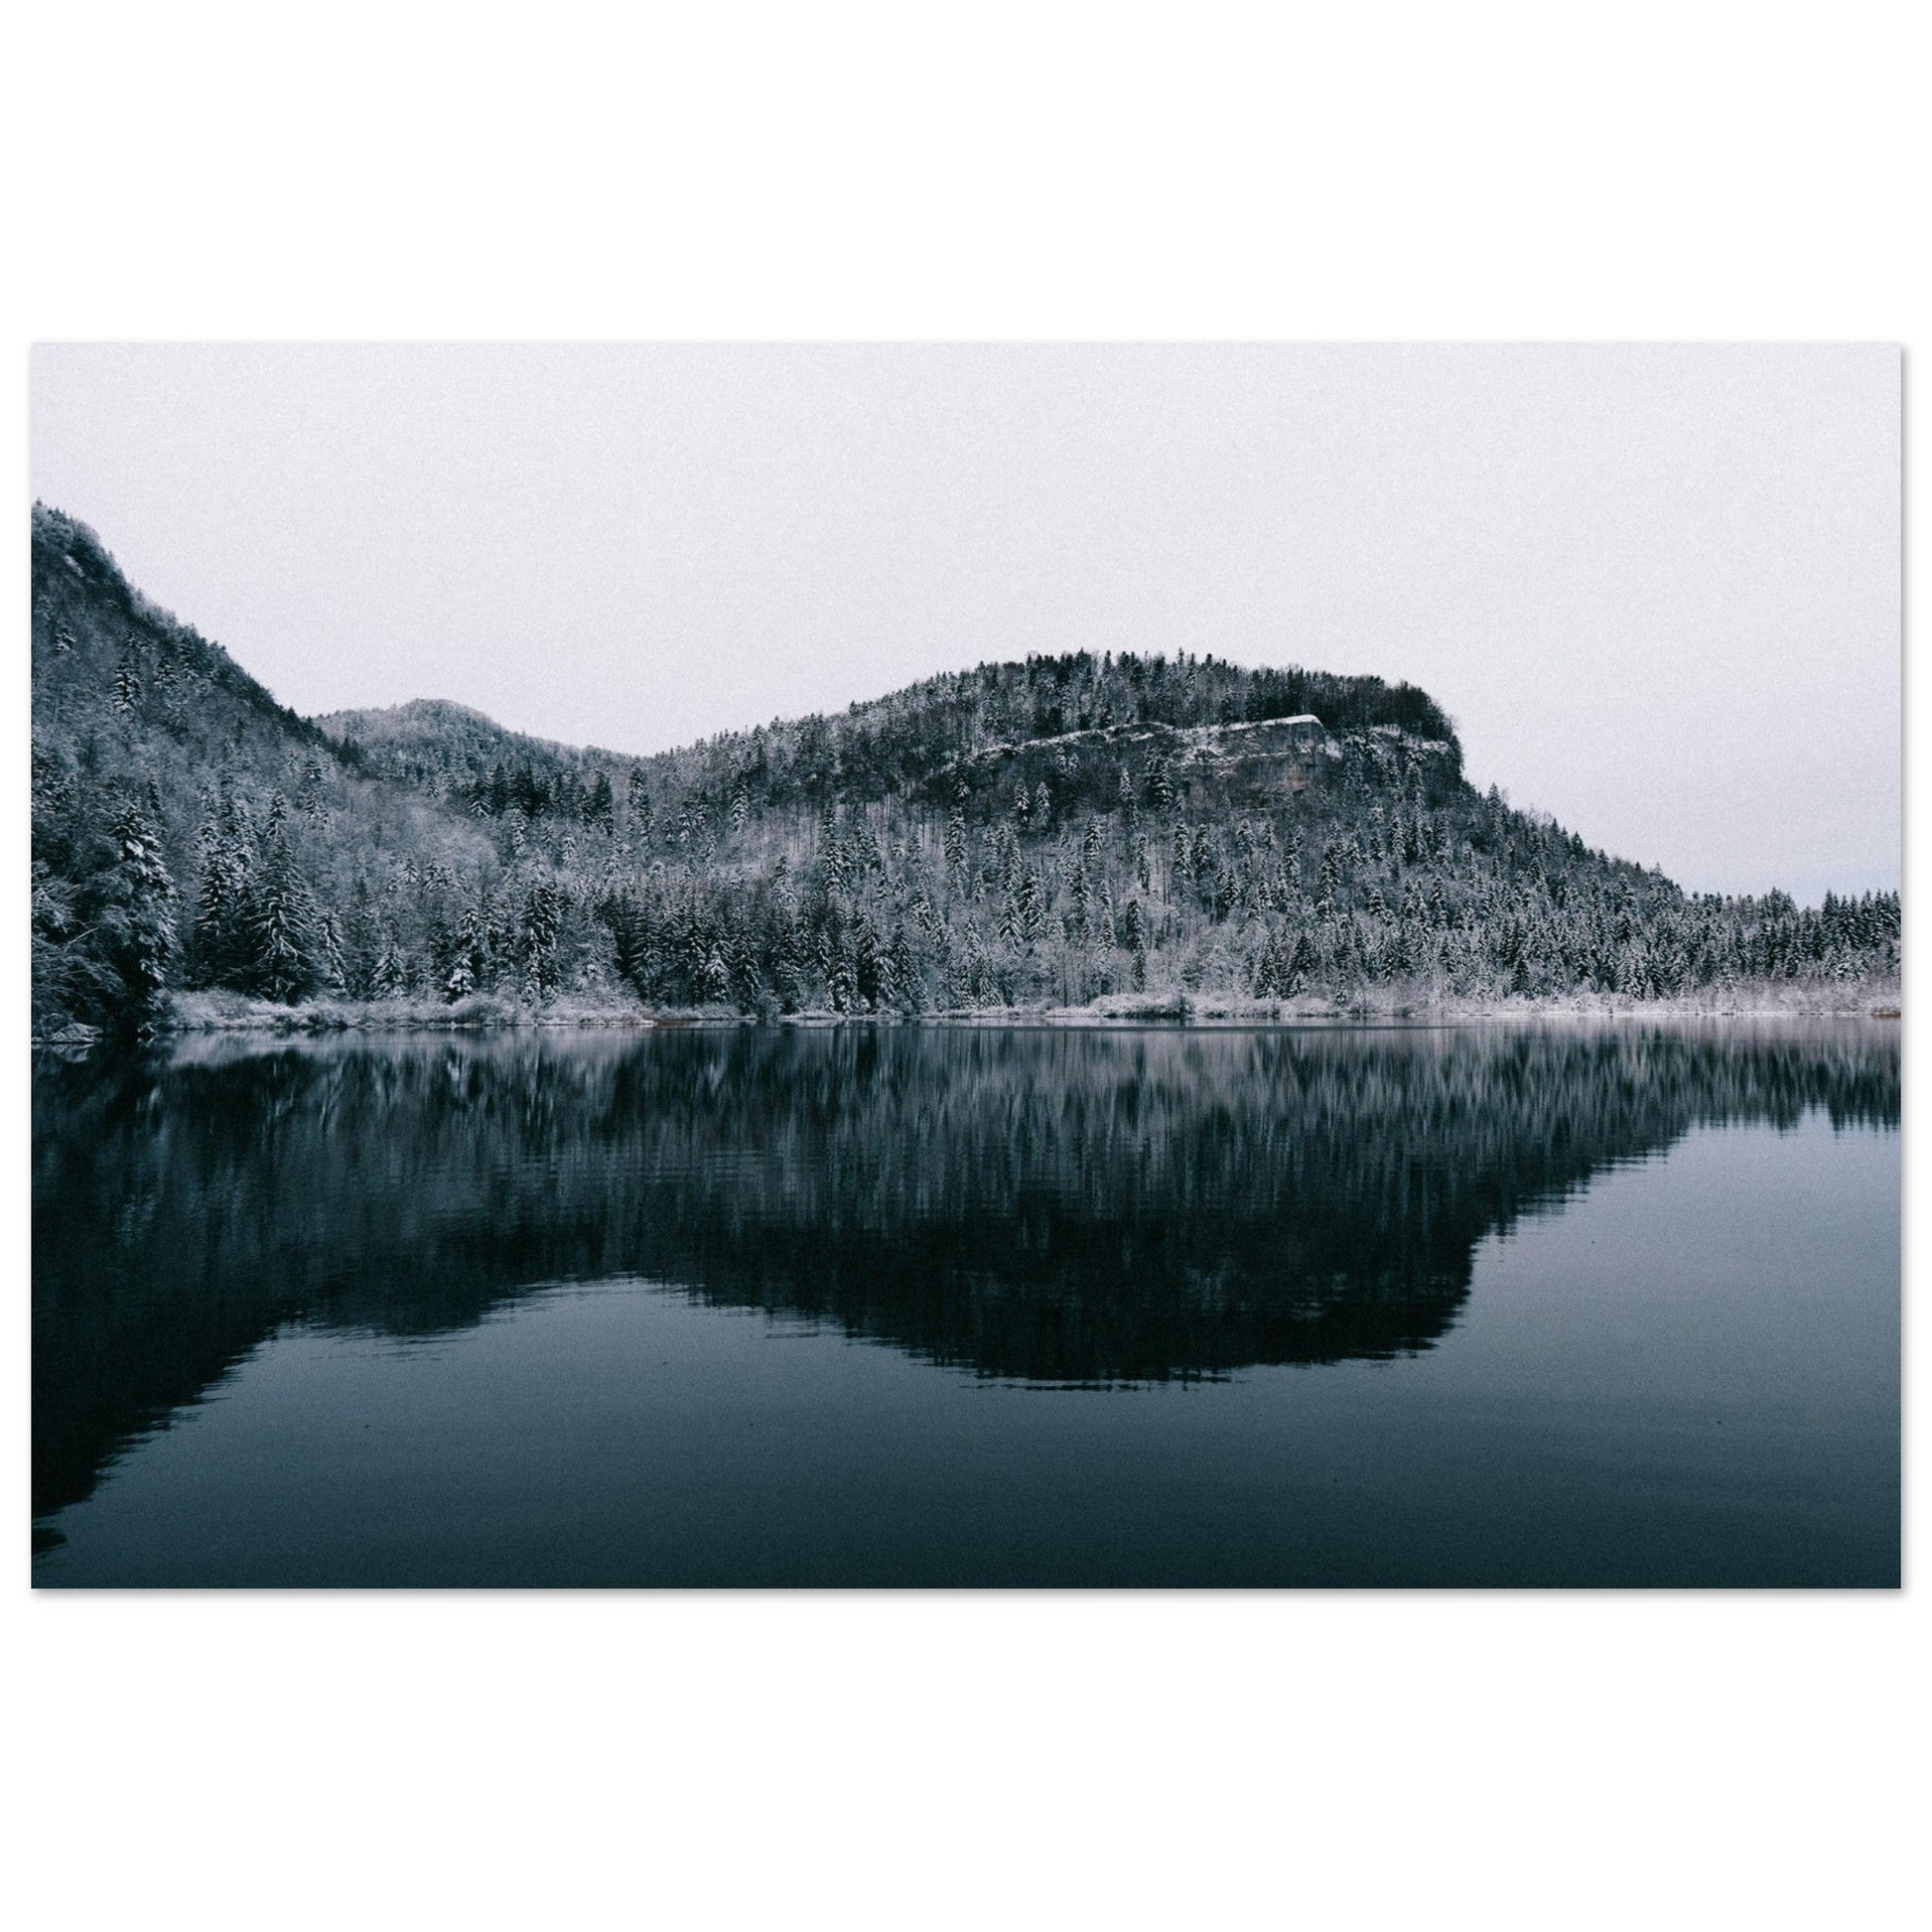 Vente Photo d'un lac et d'une foret enneigée en hiver, Jura #2 - Tableau photo alu montagne